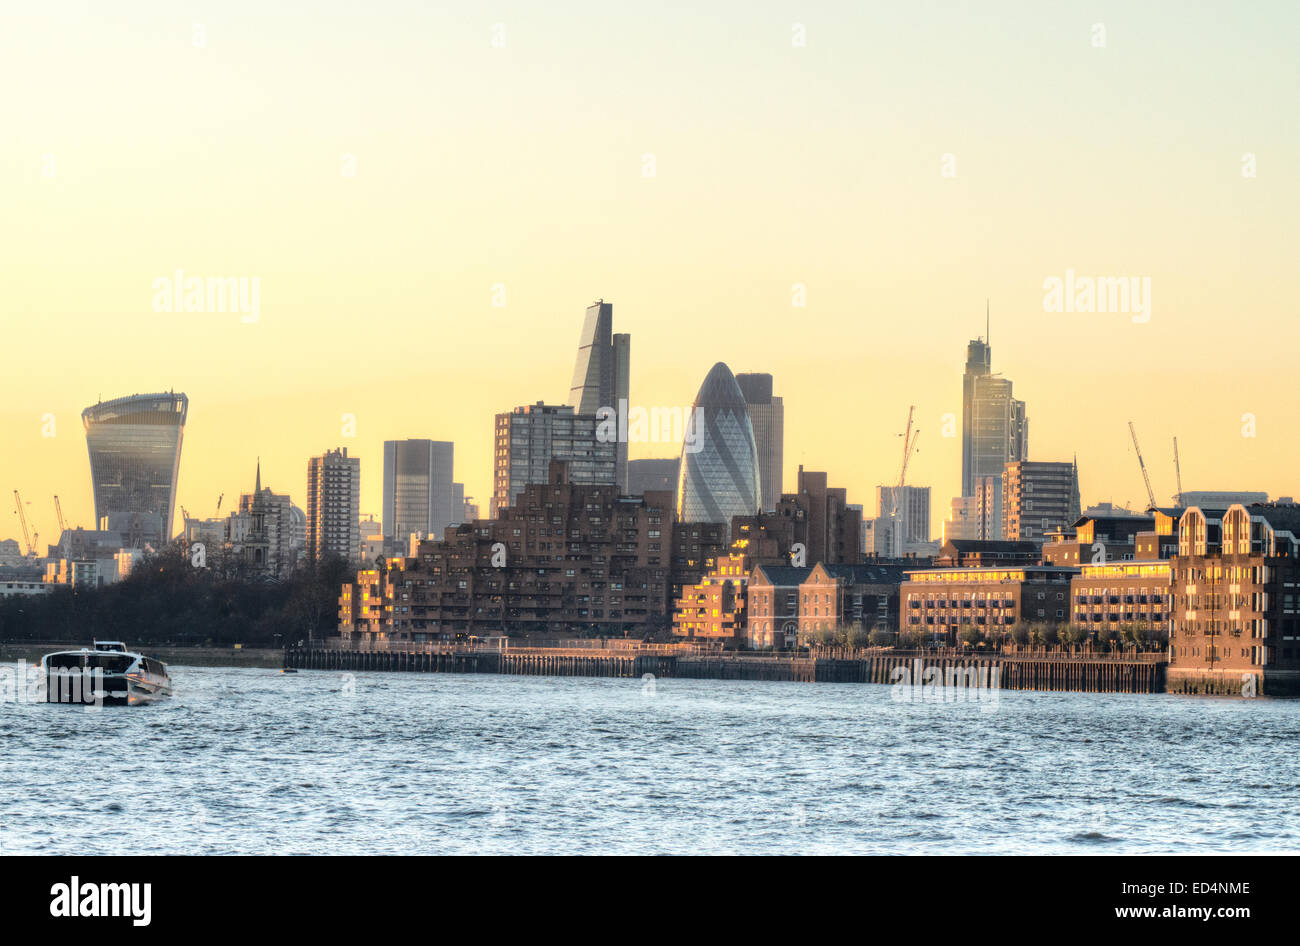 Ciudad de skyline londinense distrito financiero de Londres Foto de stock